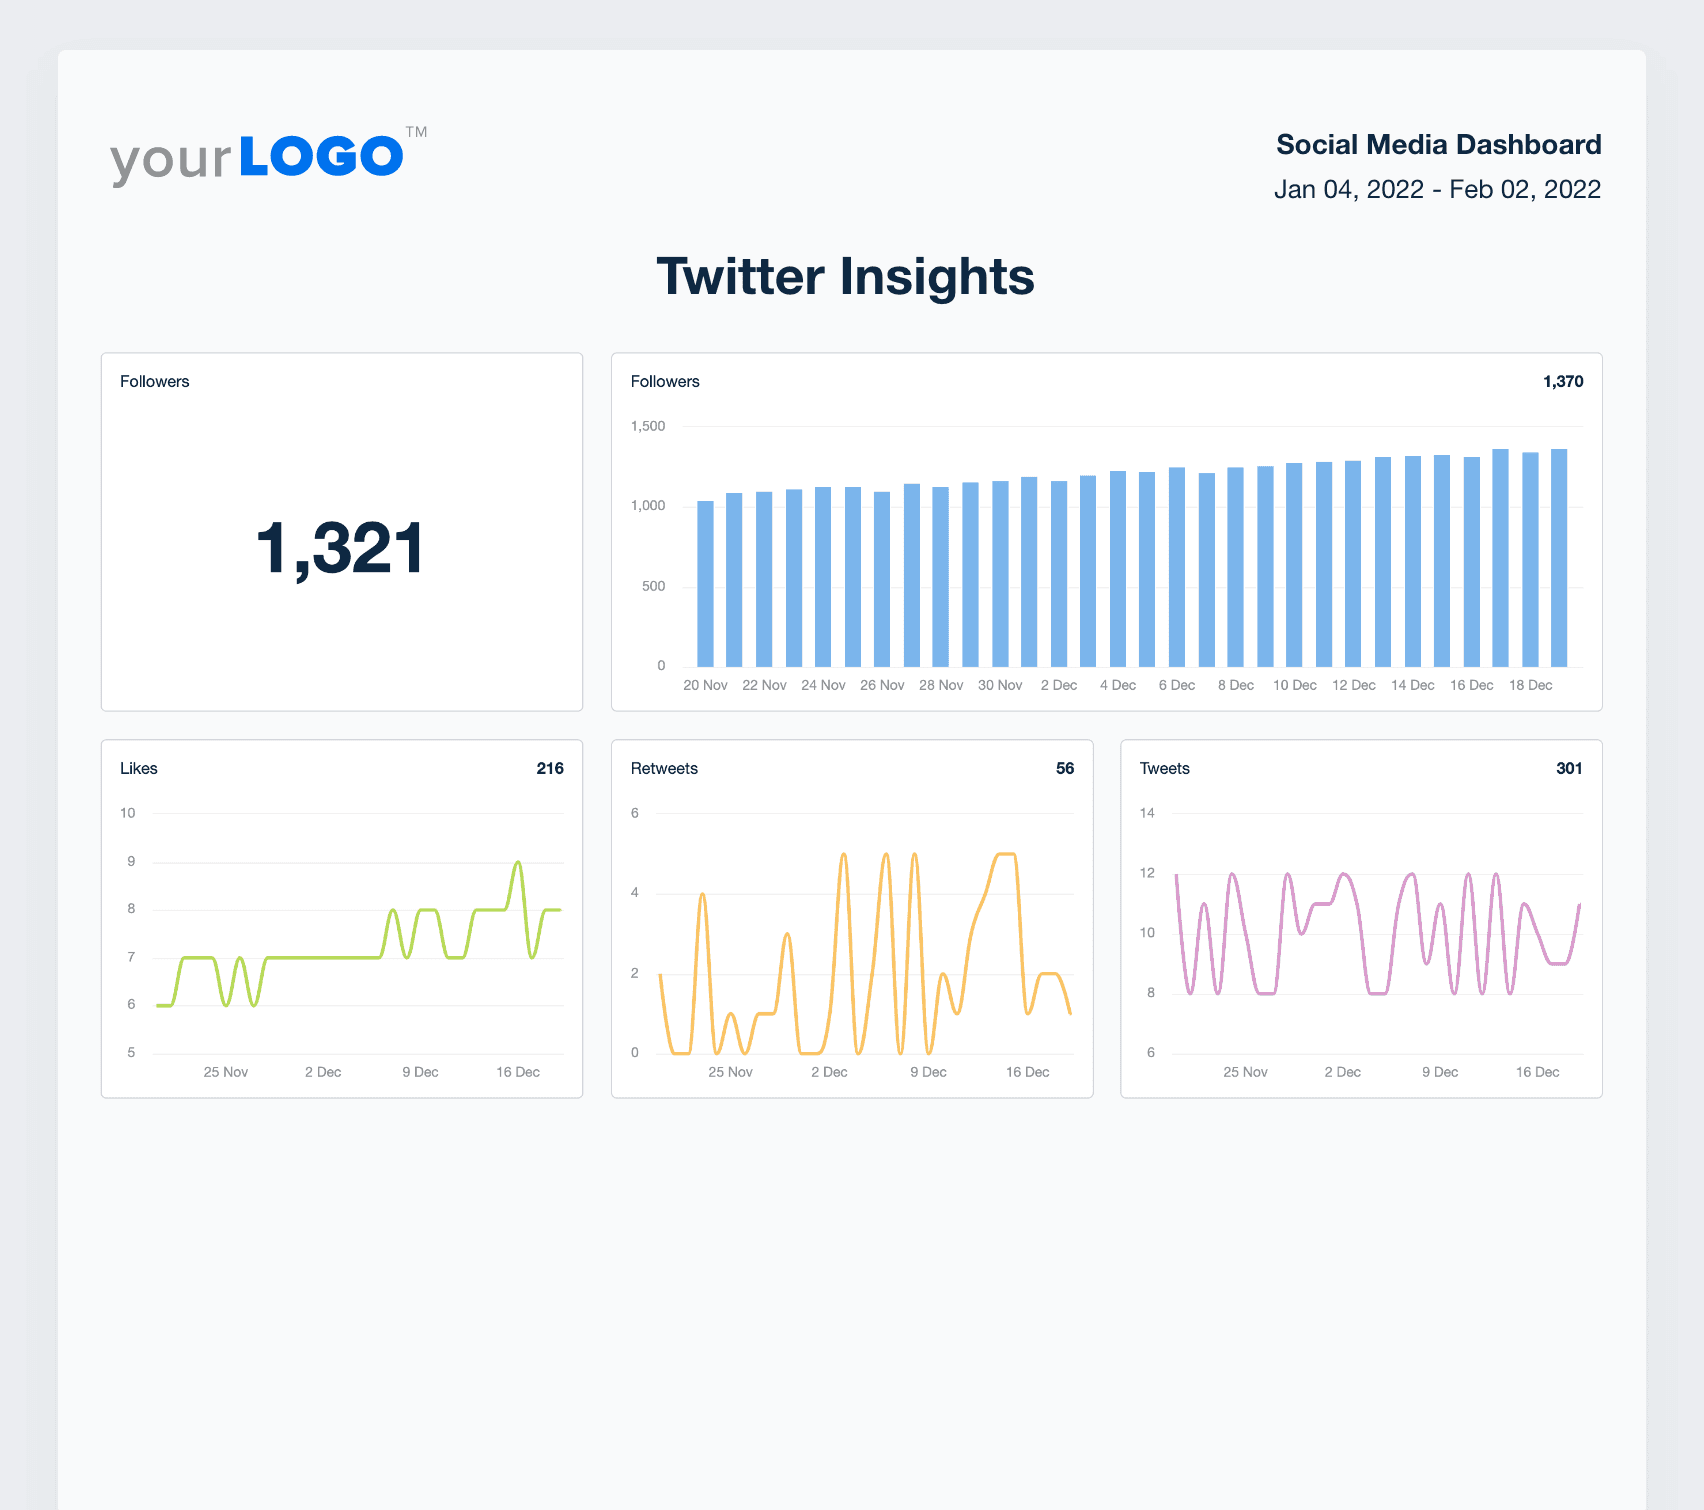 A screenshot of Twitter Insights data